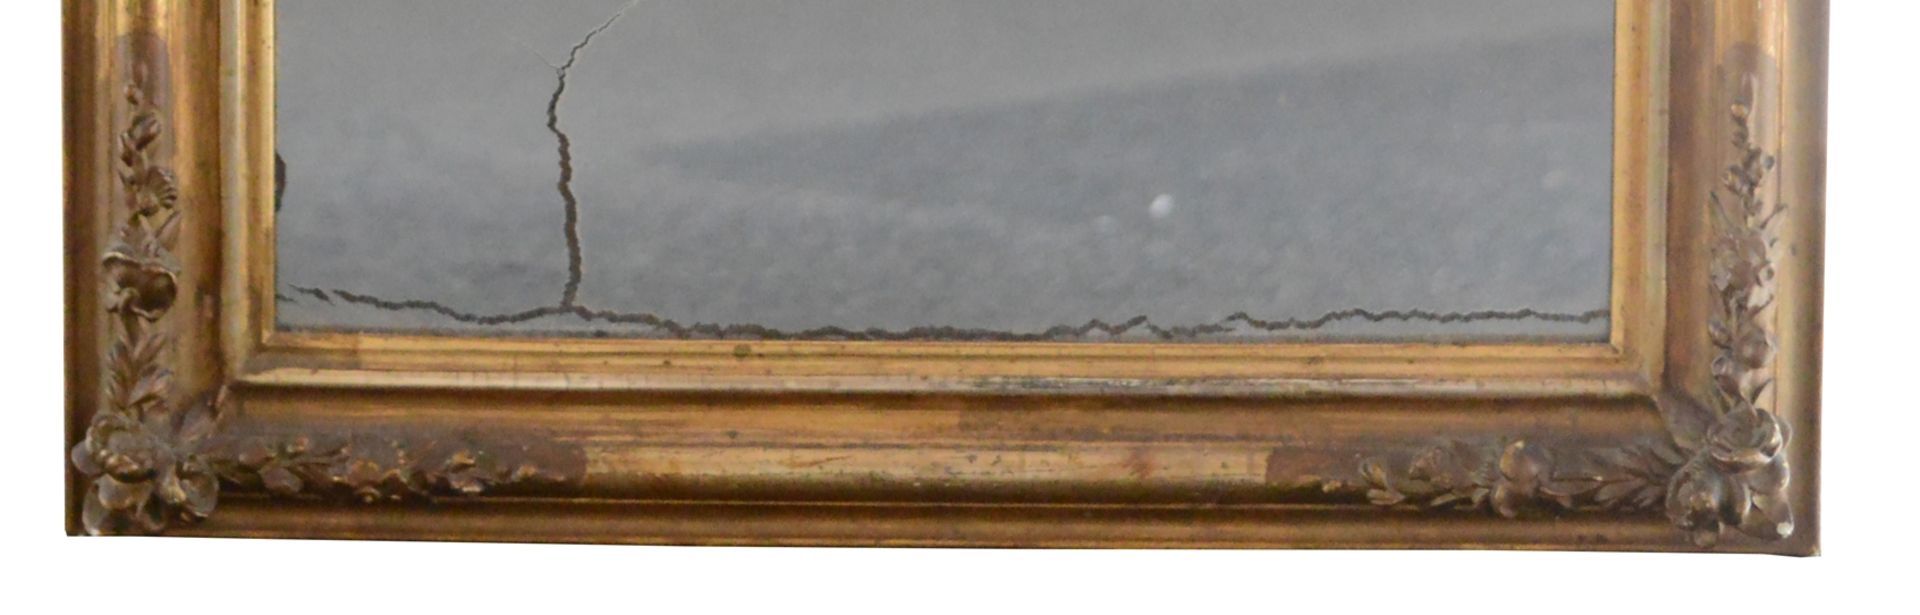 Goldspiegel um 1860, Louis Philippe, Rahmen vergoldet mit kleinen Stuckröschen, altes Spiegelglas, - Image 4 of 5